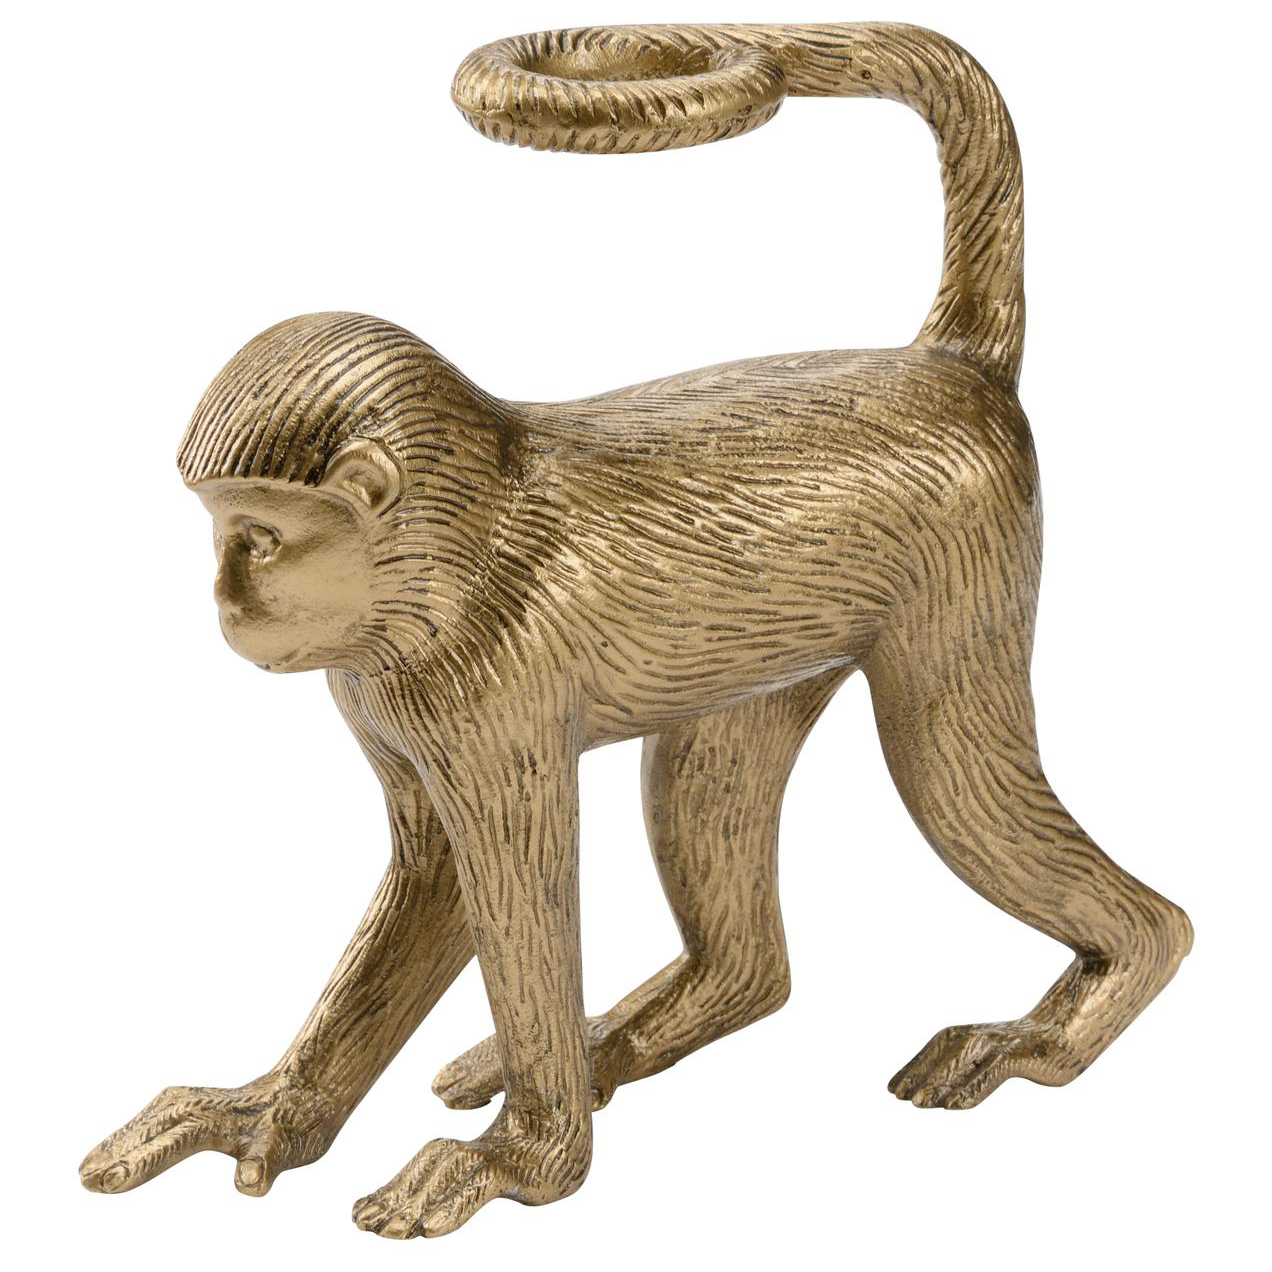 Brass Monkey Mischief Tabletop Figurine - Playful Decor - Home Accessories